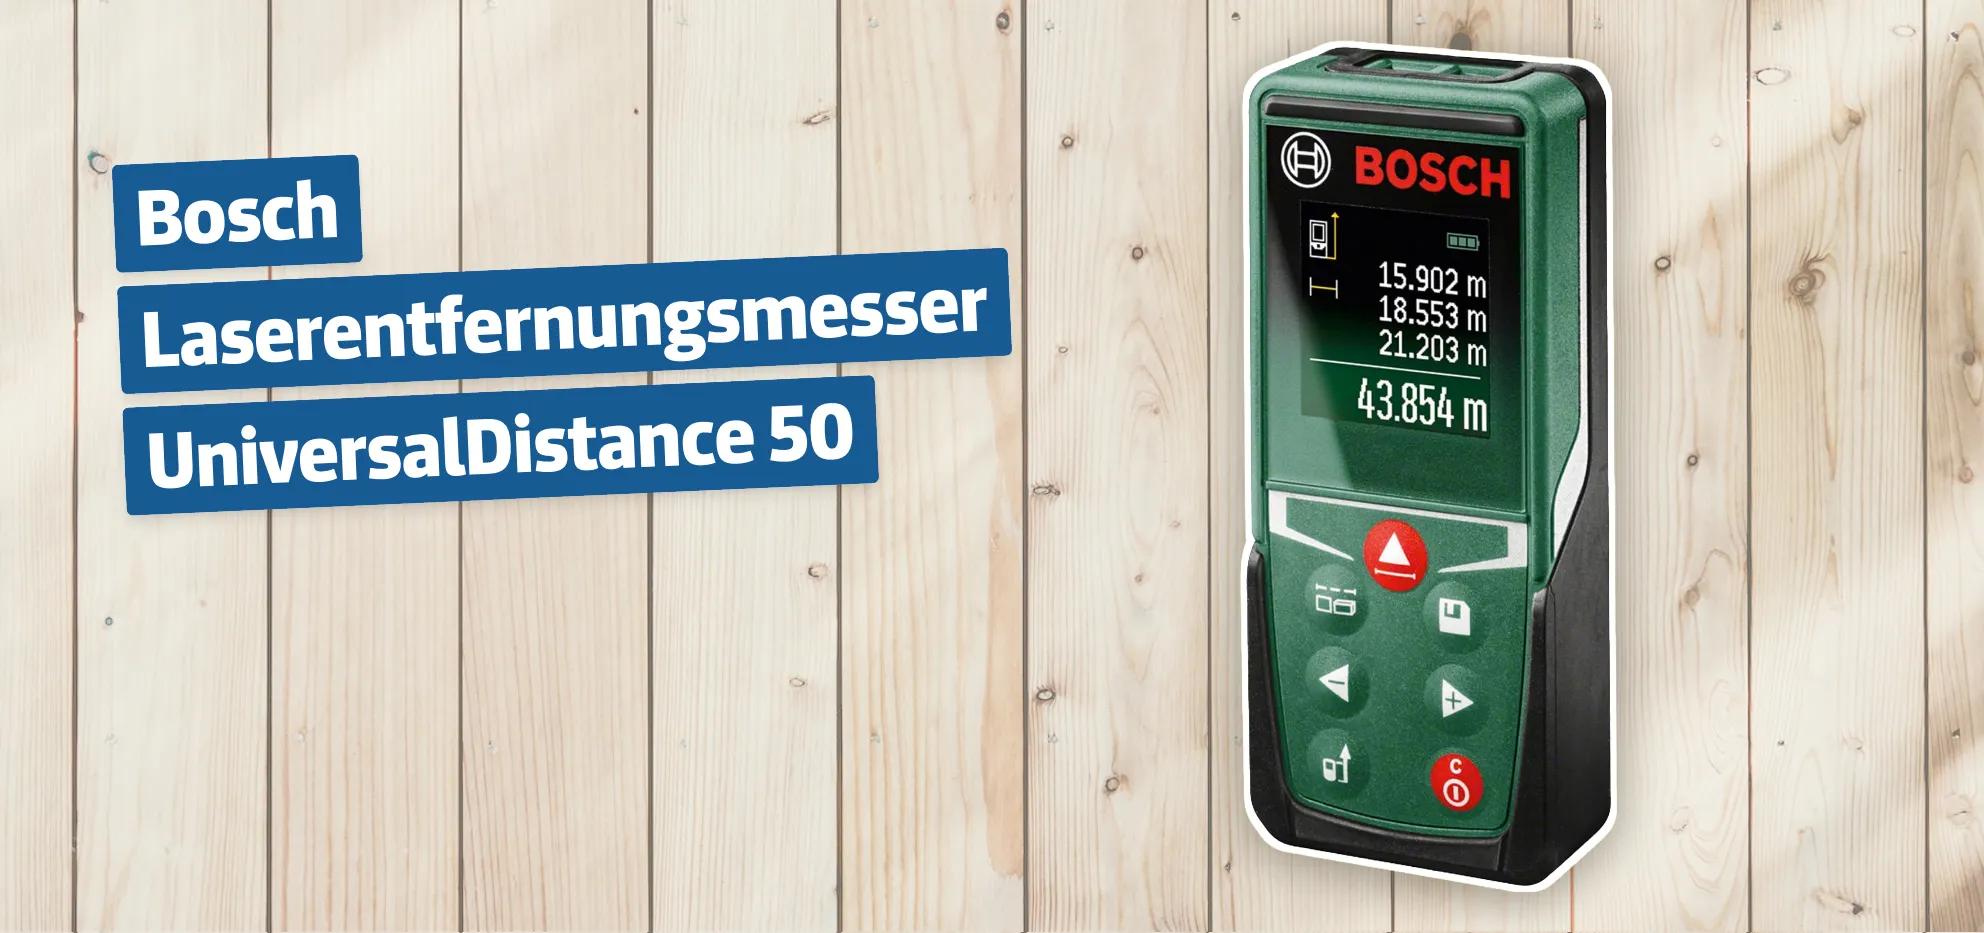 Bosch Laserentfernungsmesser UniversalDistance 50